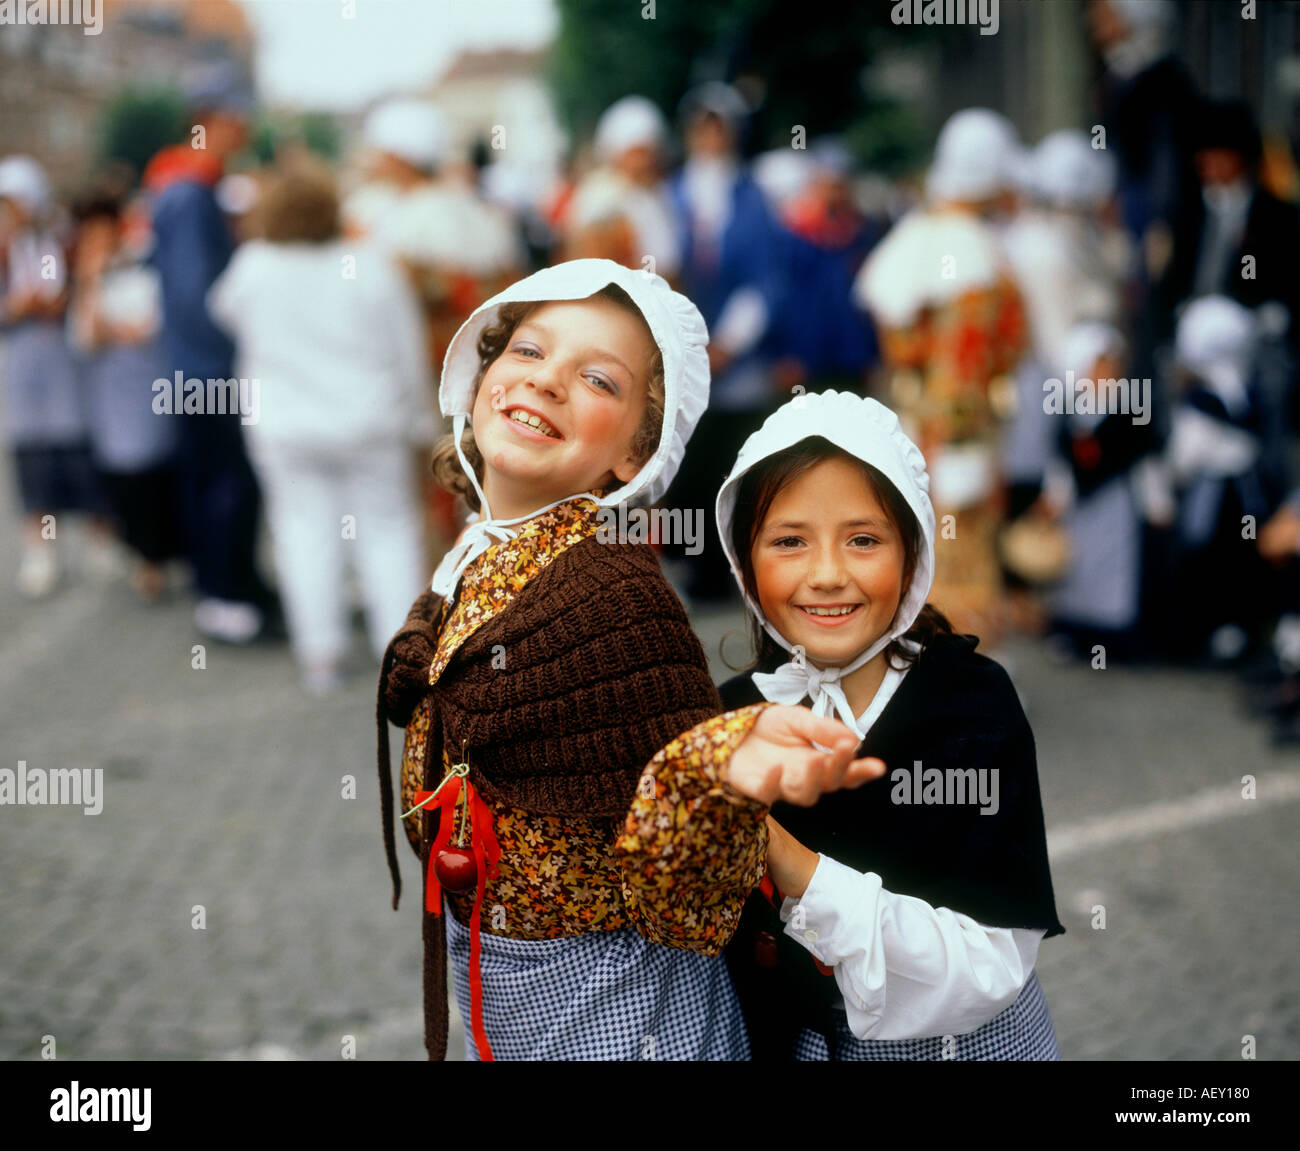 Girls in National Costume TOURNAI Region BELGIUM Stock Photo - Alamy